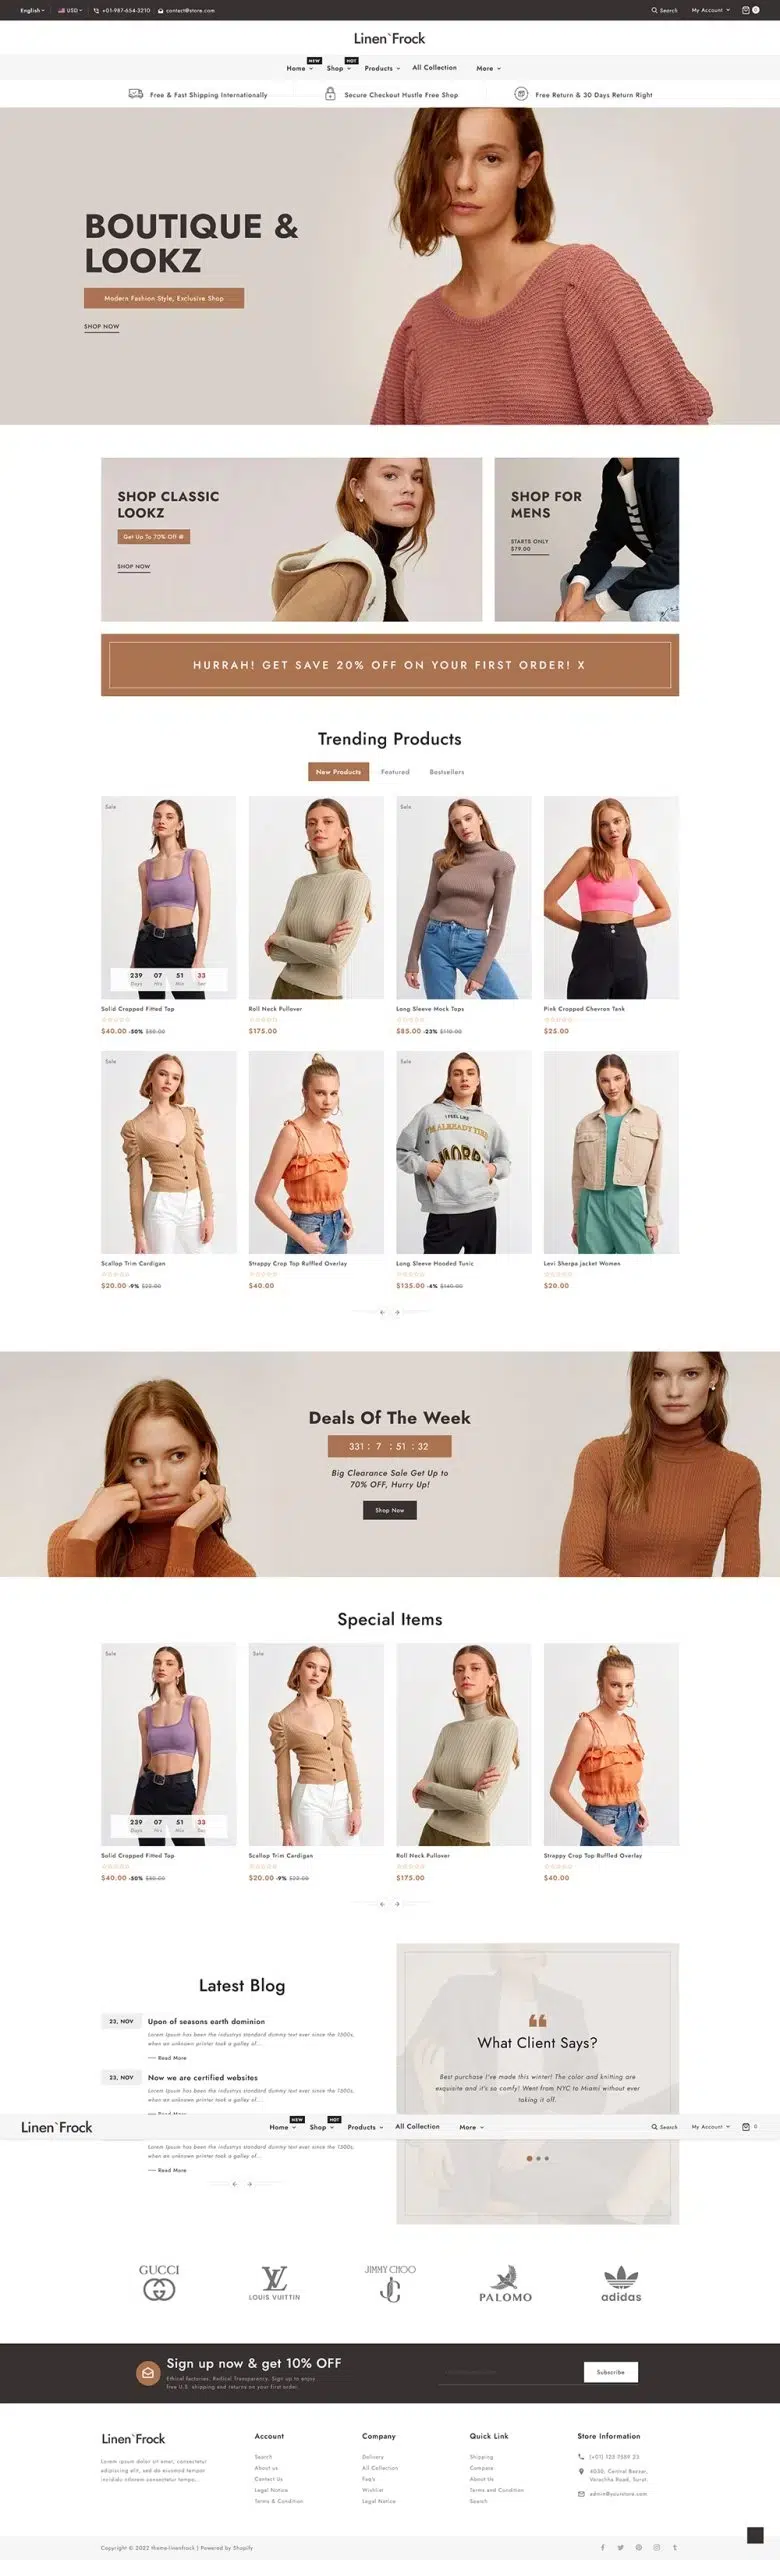 Linenfrock — minimalistyczna moda &Amp; Styl życia — wielozadaniowy, responsywny motyw Shopify 2.0